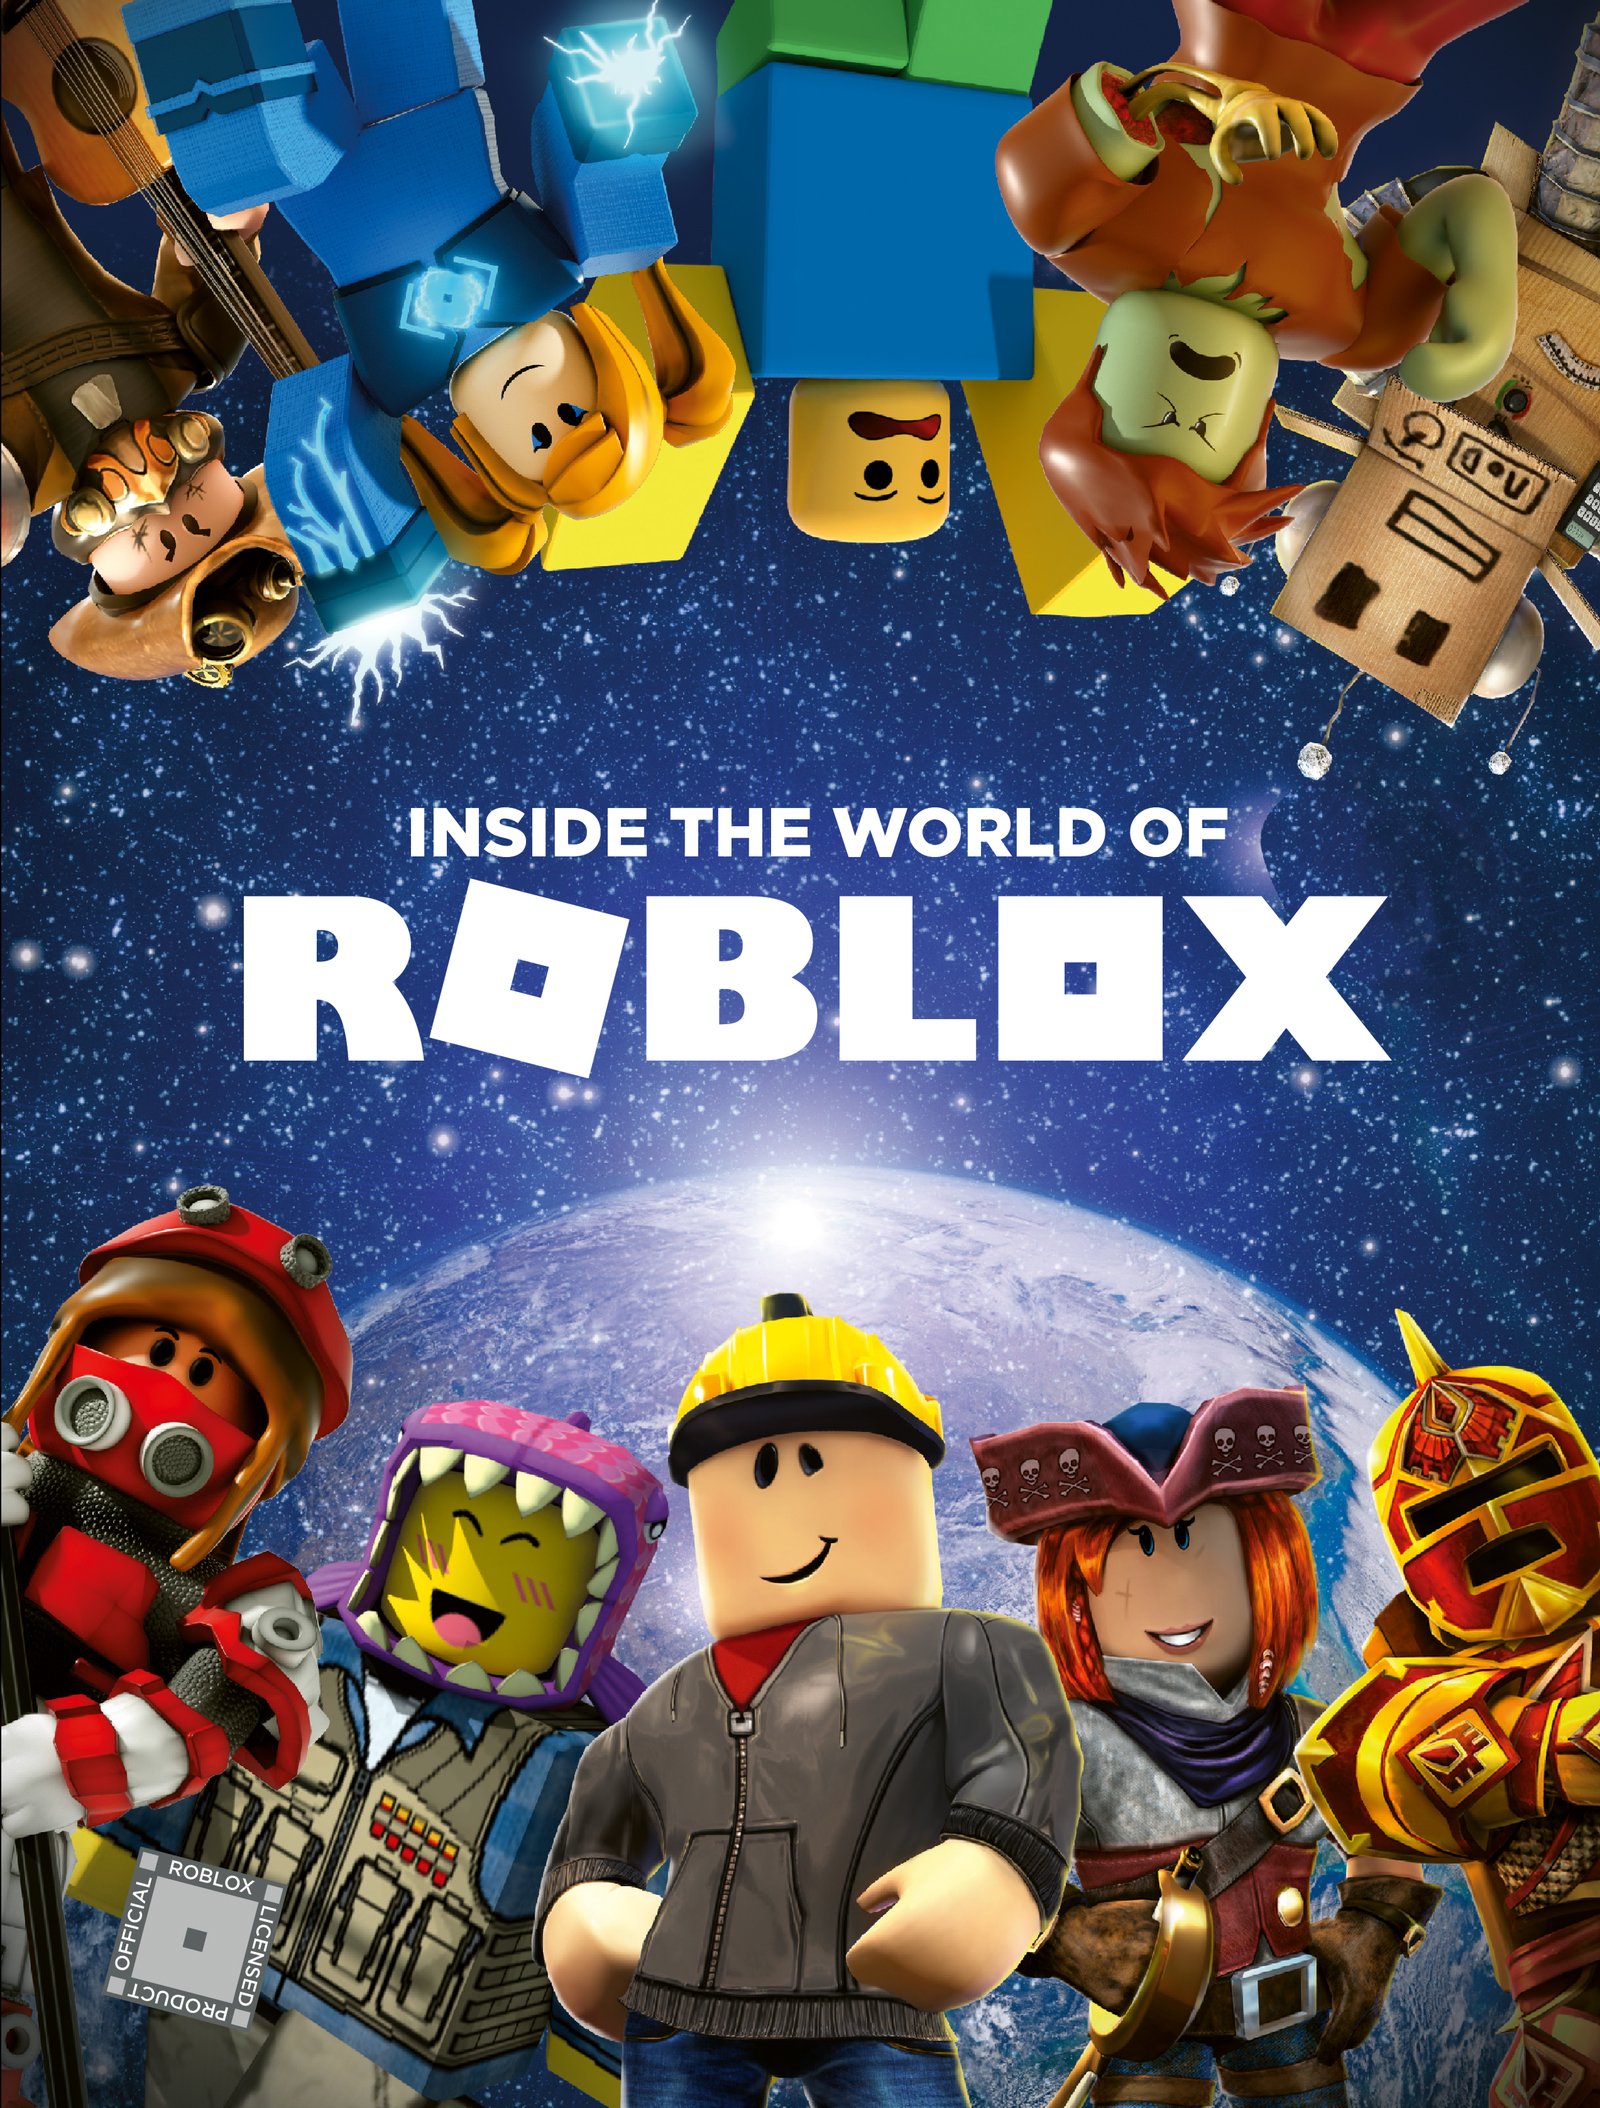 Roblox 2024 sẽ là một năm đầy thú vị cho cộng đồng Roblox. Những nội dung và tính năng mới sẽ được ra mắt, tạo nên một trải nghiệm chơi game hoàn toàn mới. Hãy đón xem những hình ảnh liên quan để cập nhật những thông tin mới nhất về Roblox